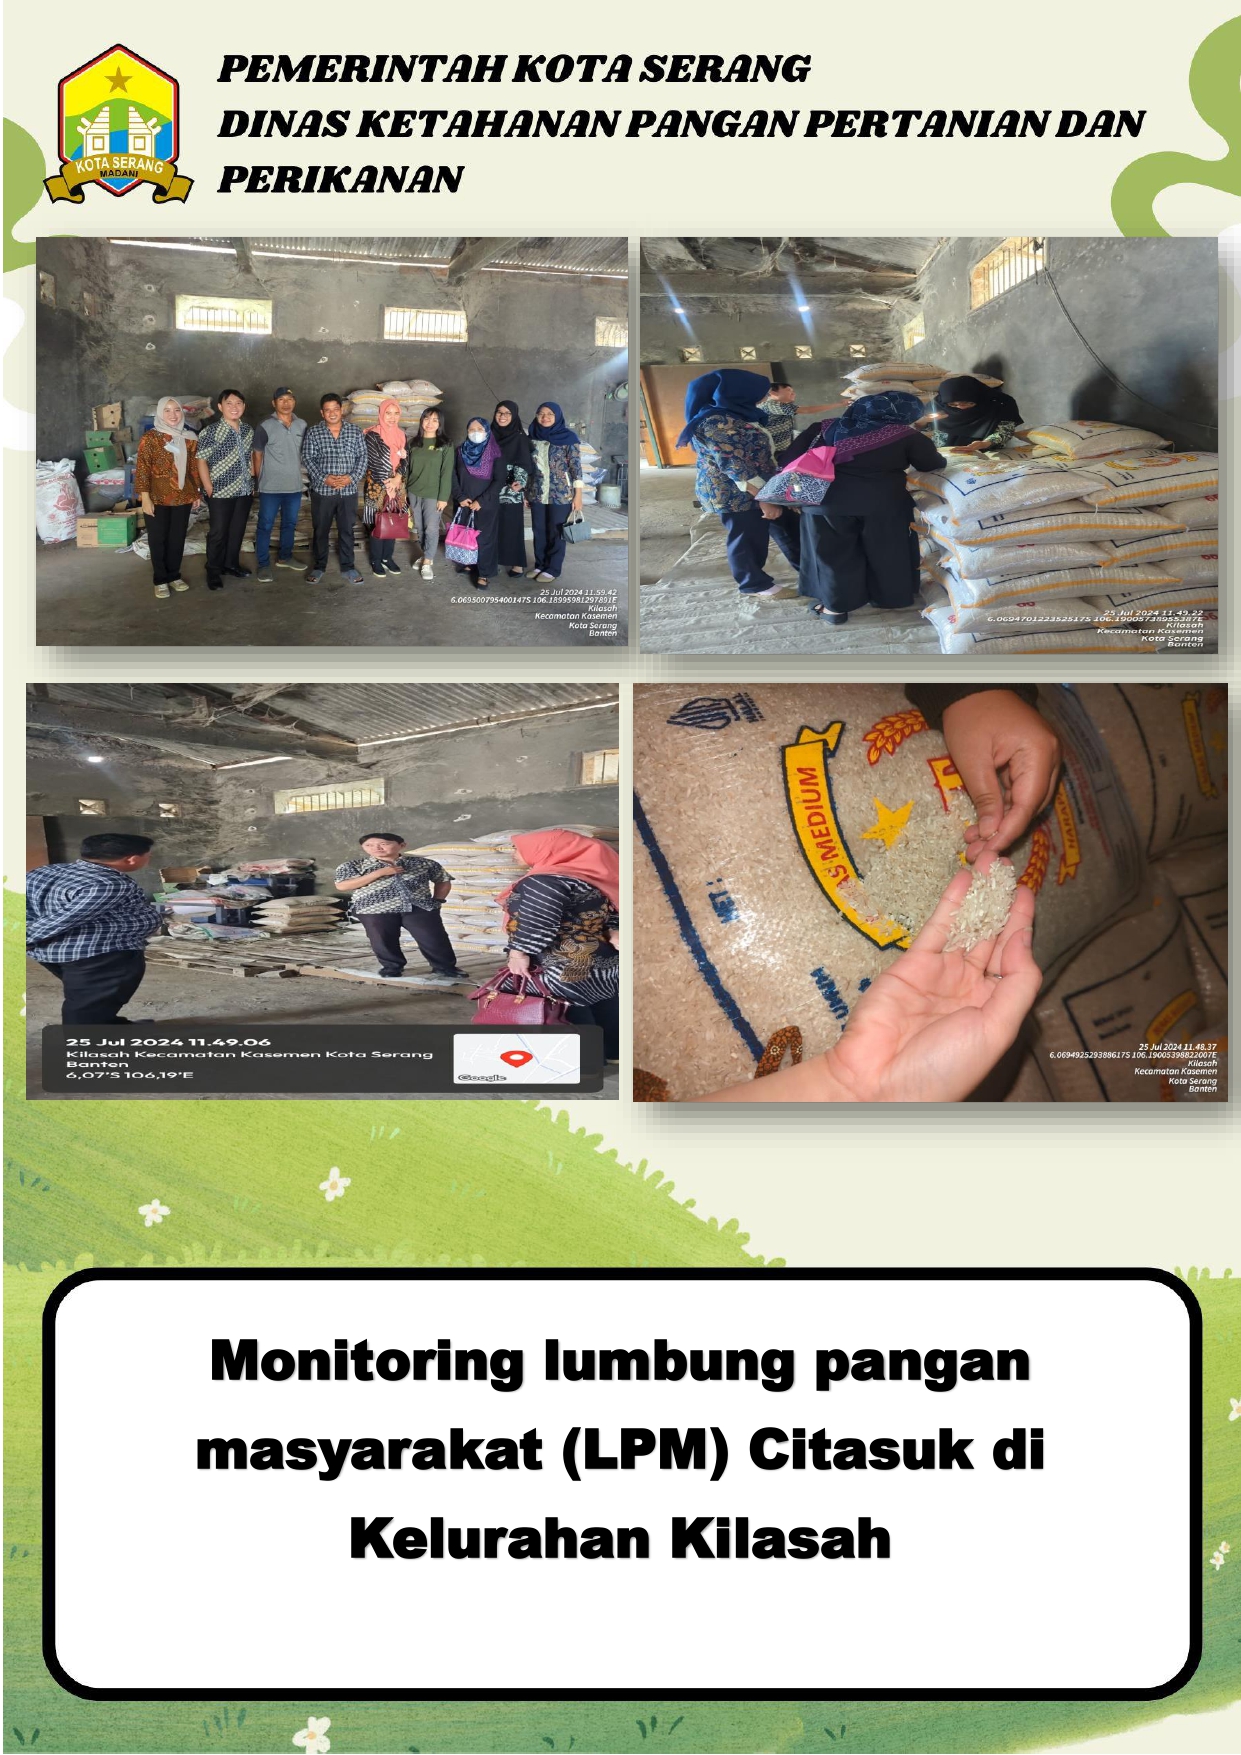 Monitoring lumbung pangan masyarakat (LPM) Citasuk di Kelurahan Kilasah Kec. Kasemen